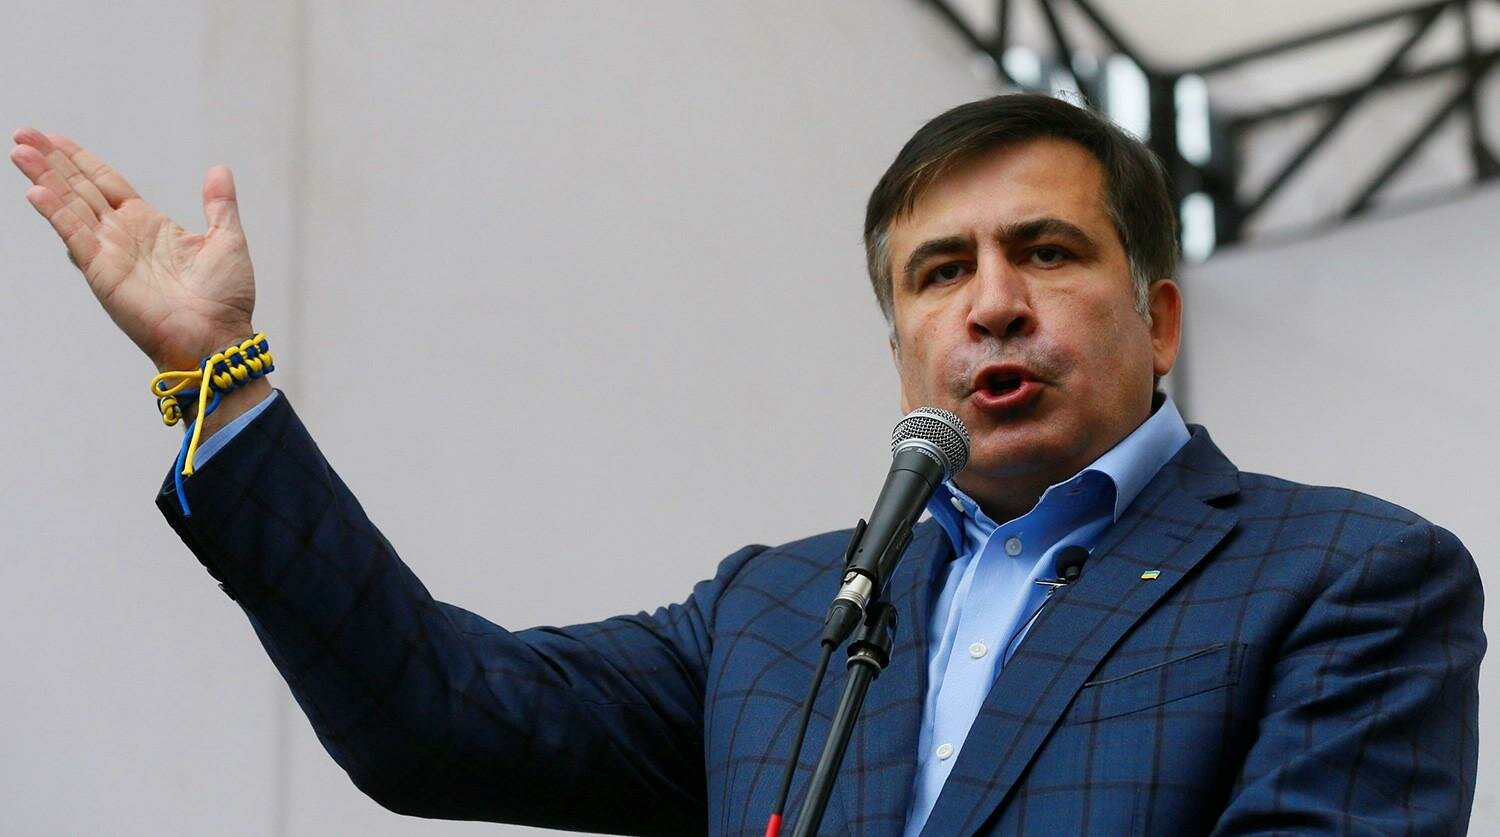 "Не мог поверить своим глазам", - Саакашвили сделал громкое заявление о "складе денег" в администрации Порошенко 